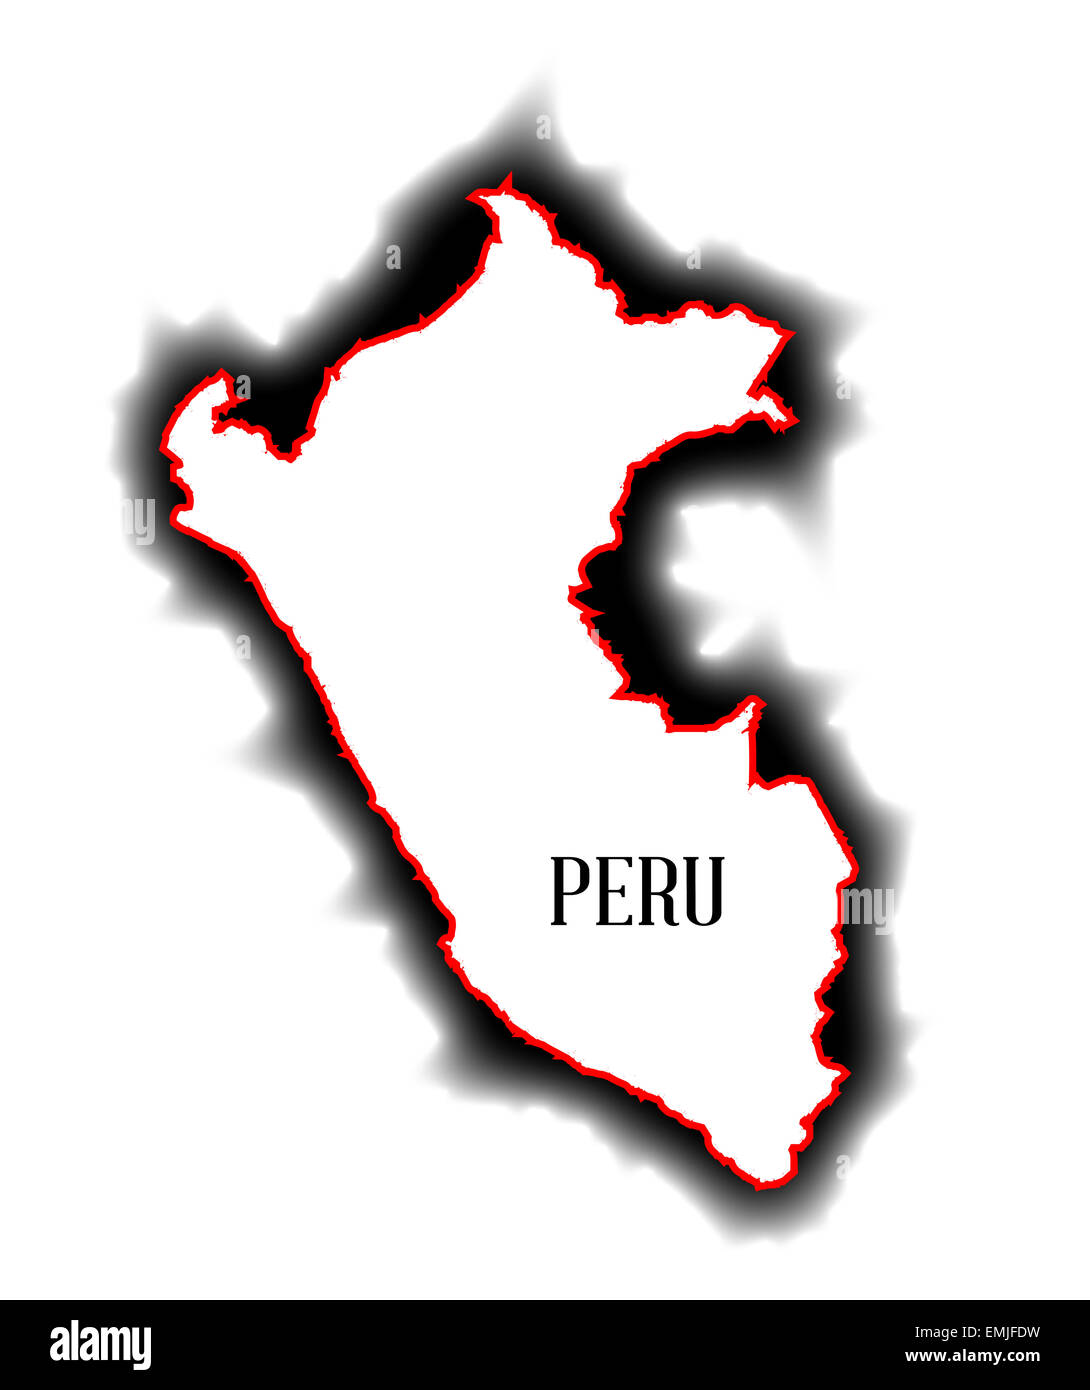 Contours bland carte des pays d'Amérique du Sud du Pérou Banque D'Images